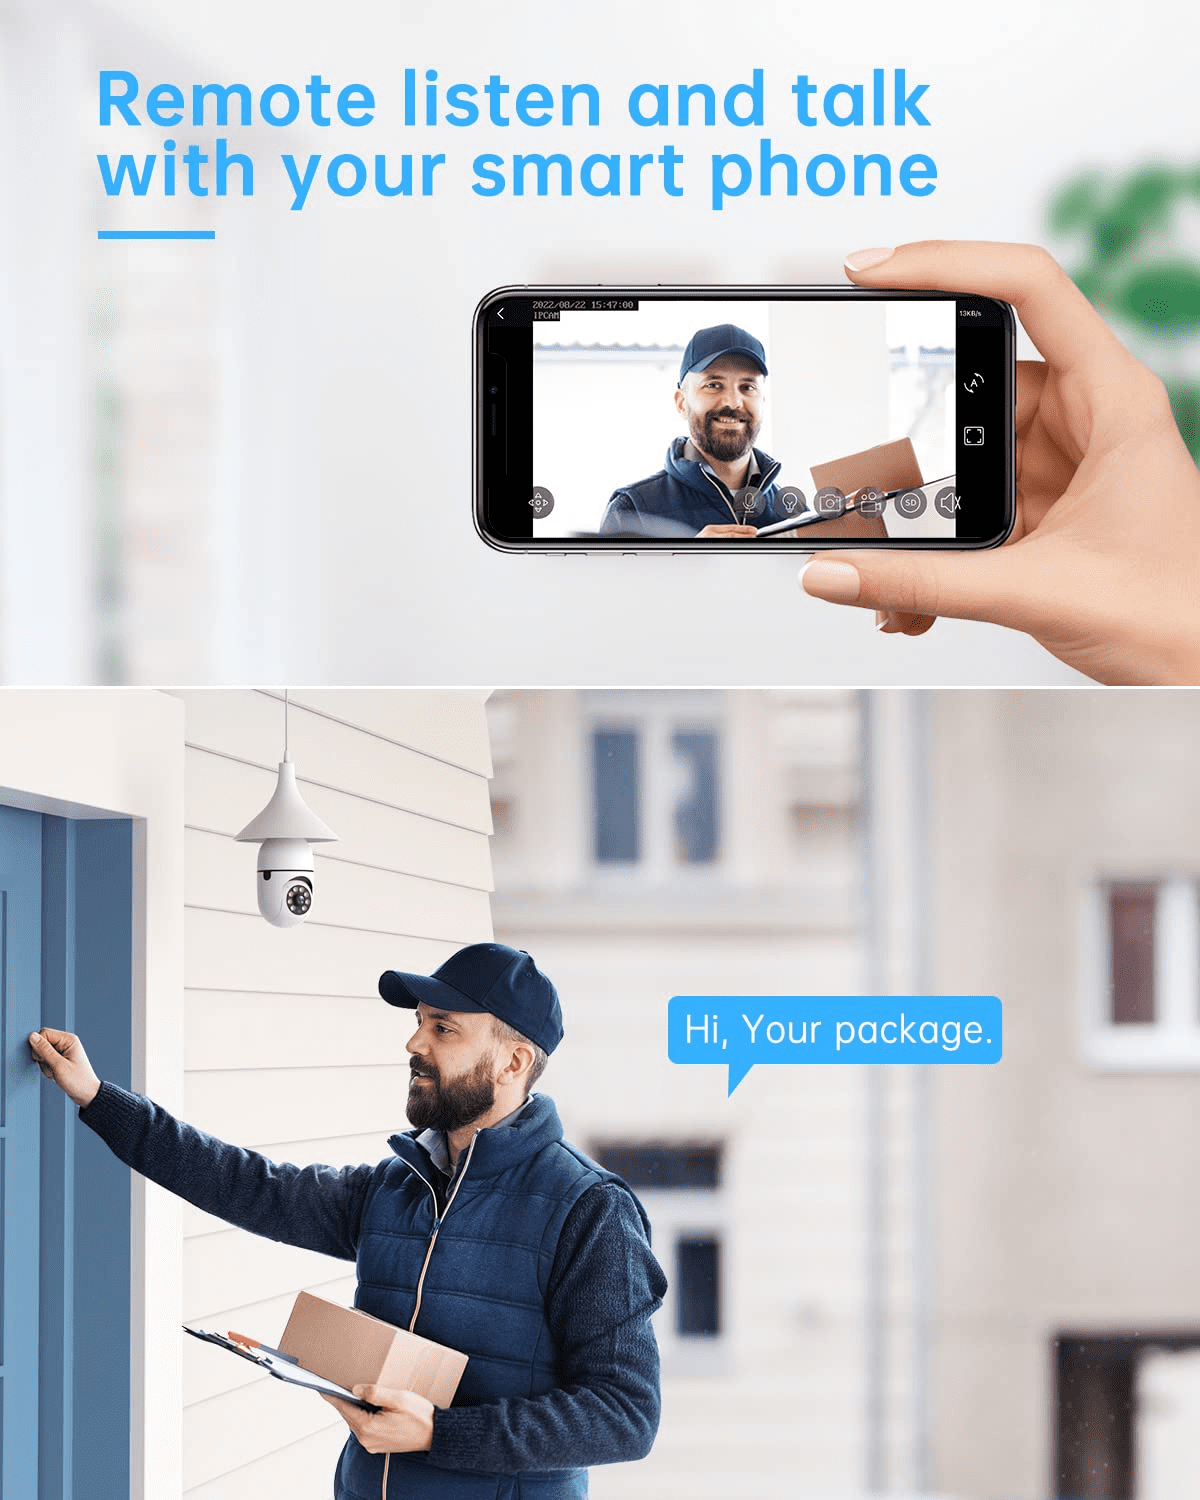 Wifi Vidéo Sonnette Smart Home Sans Fil Sécurité Protection Caméra Anneau  Porte Bell Interphone Vision Nocturne Rechargeable Kement App